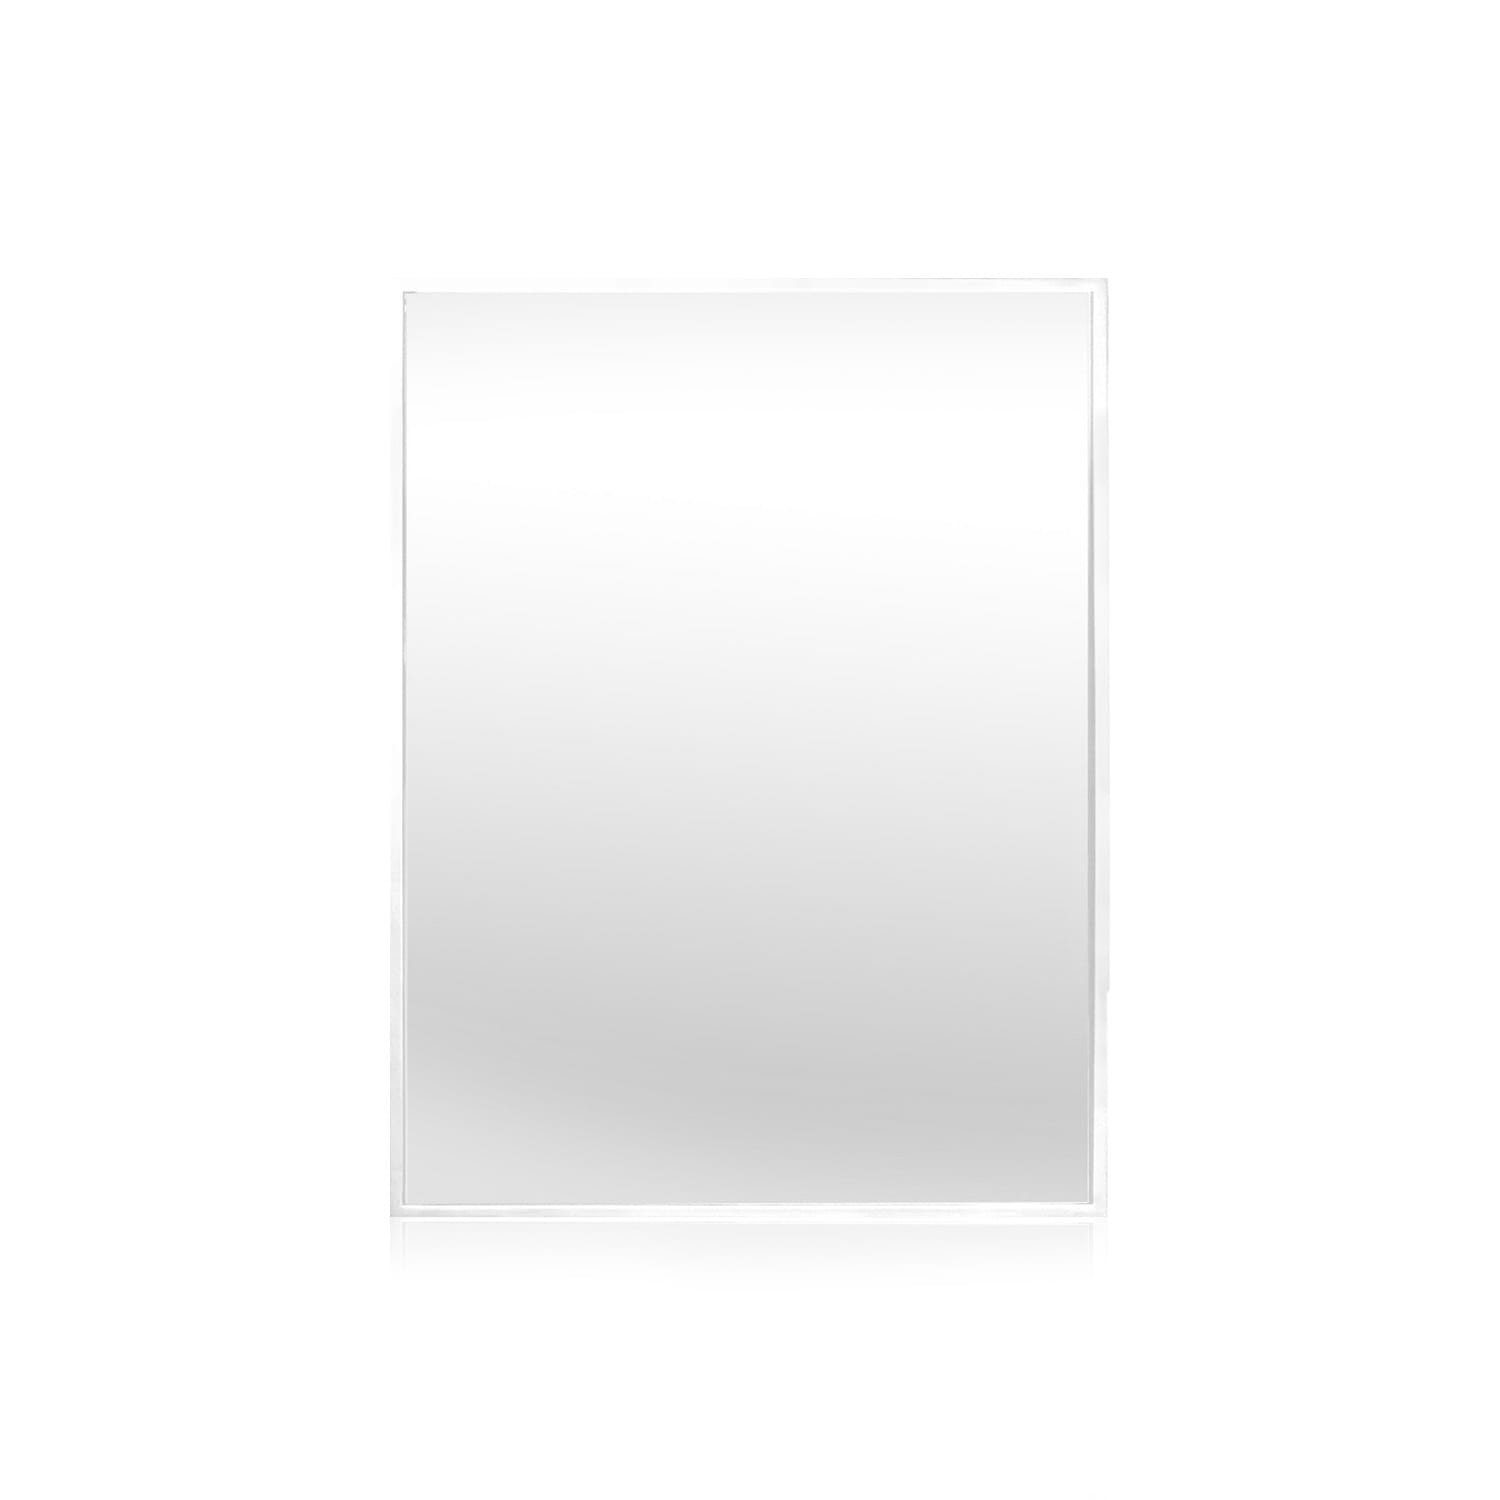 Croxley Casa Weiß x 60 Weiß | Wandspiegel Chic Spiegel 90 cm